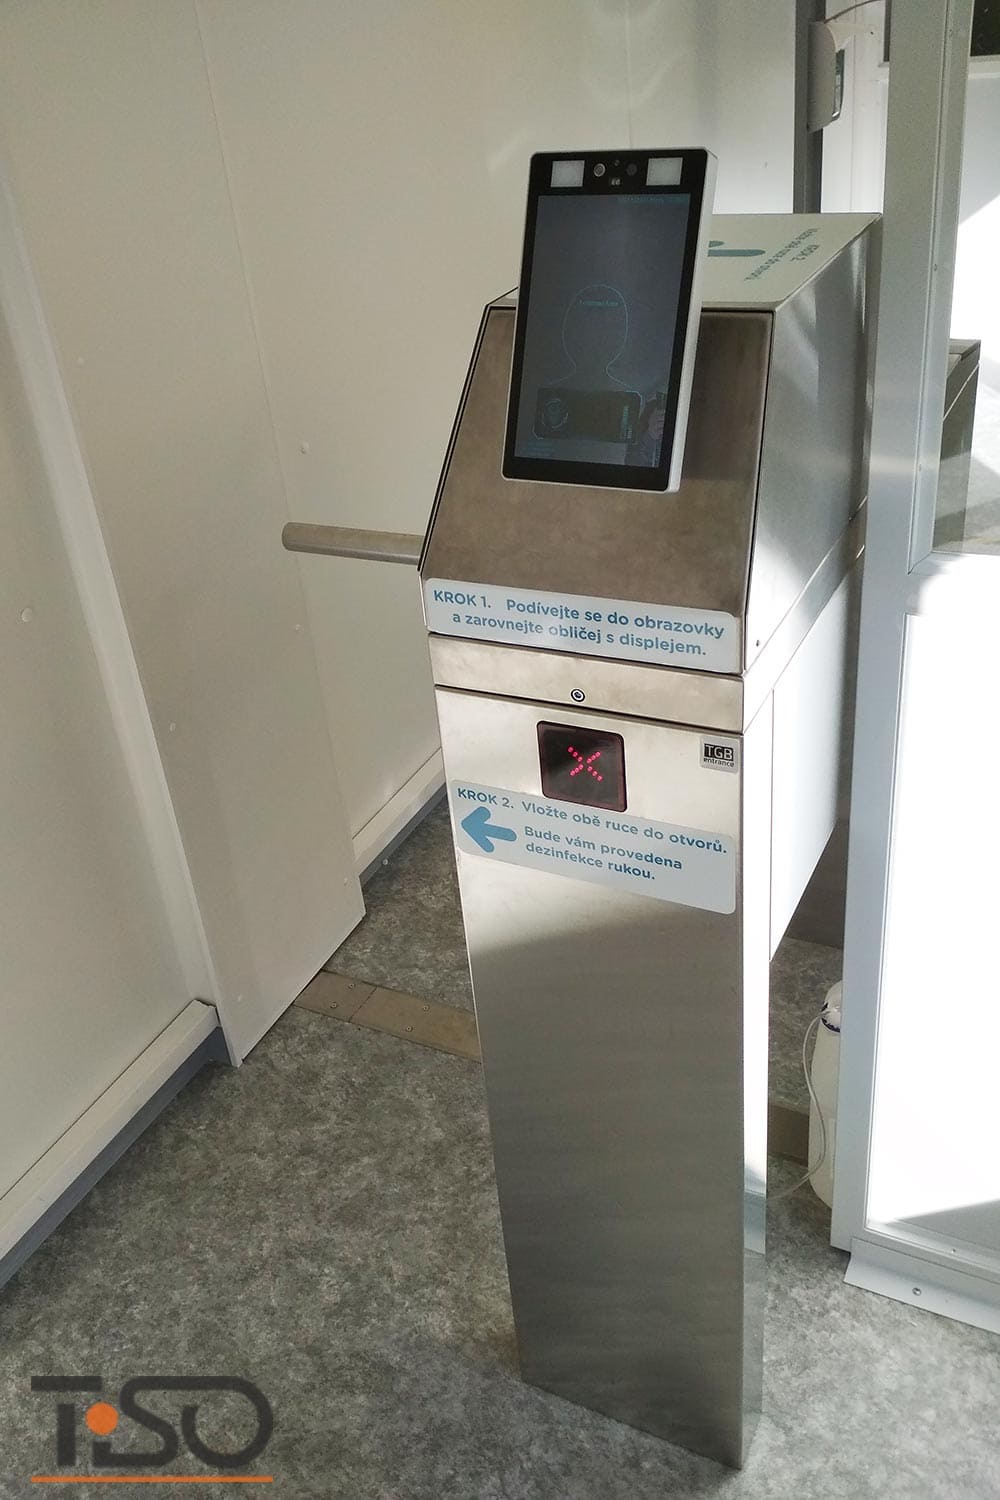 Twix-M i automatyczny system dezynfekcji rąk, szpital Horovice, Czechy